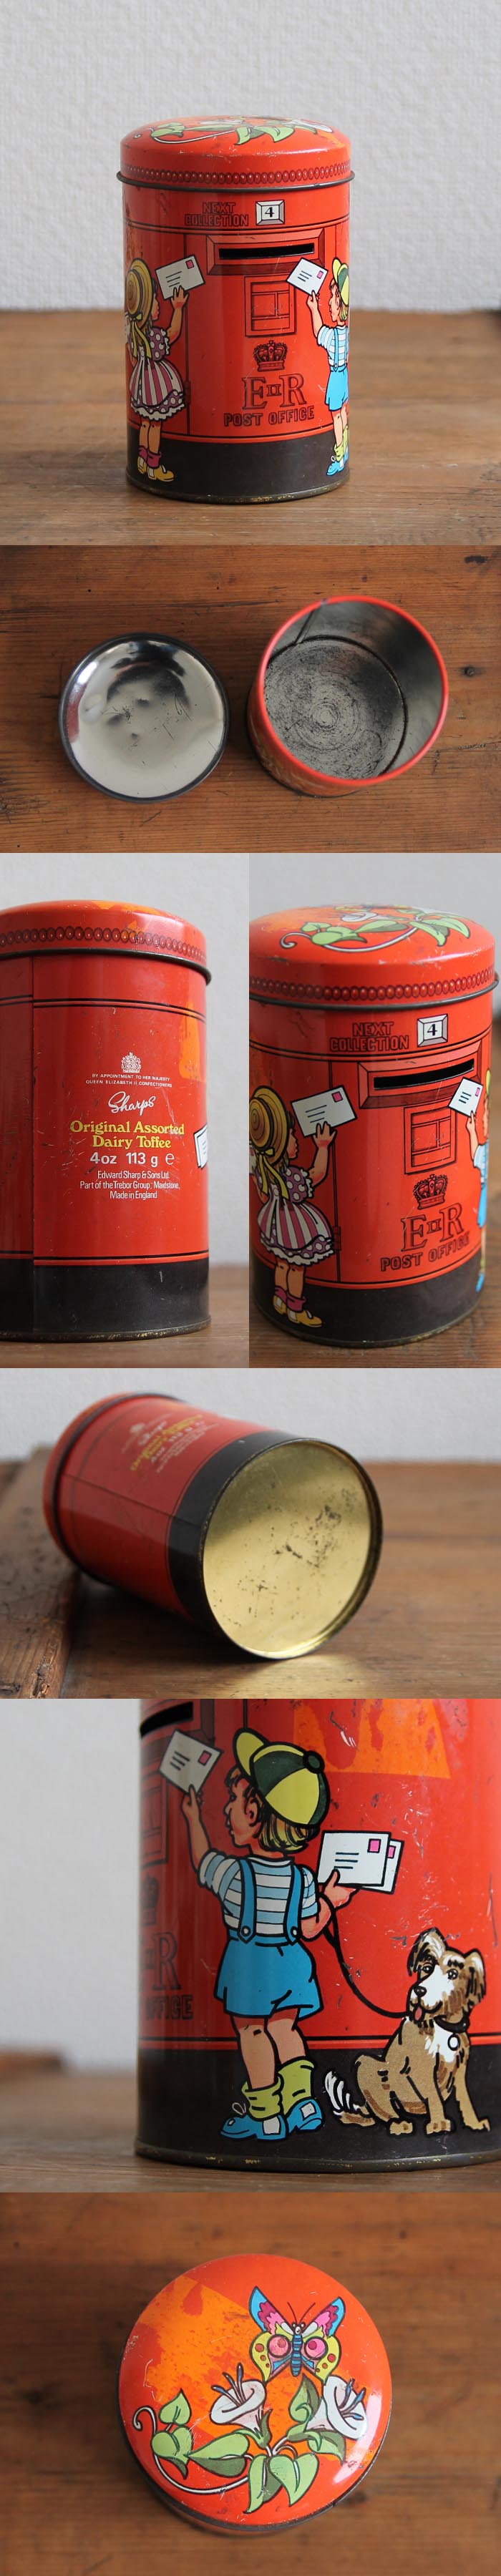 イギリス ビンテージ トフィー缶/Sharp's/ポストTIN/ティン/ブリキ/アンティーク雑貨【貯金箱になるお菓子の缶】N-614